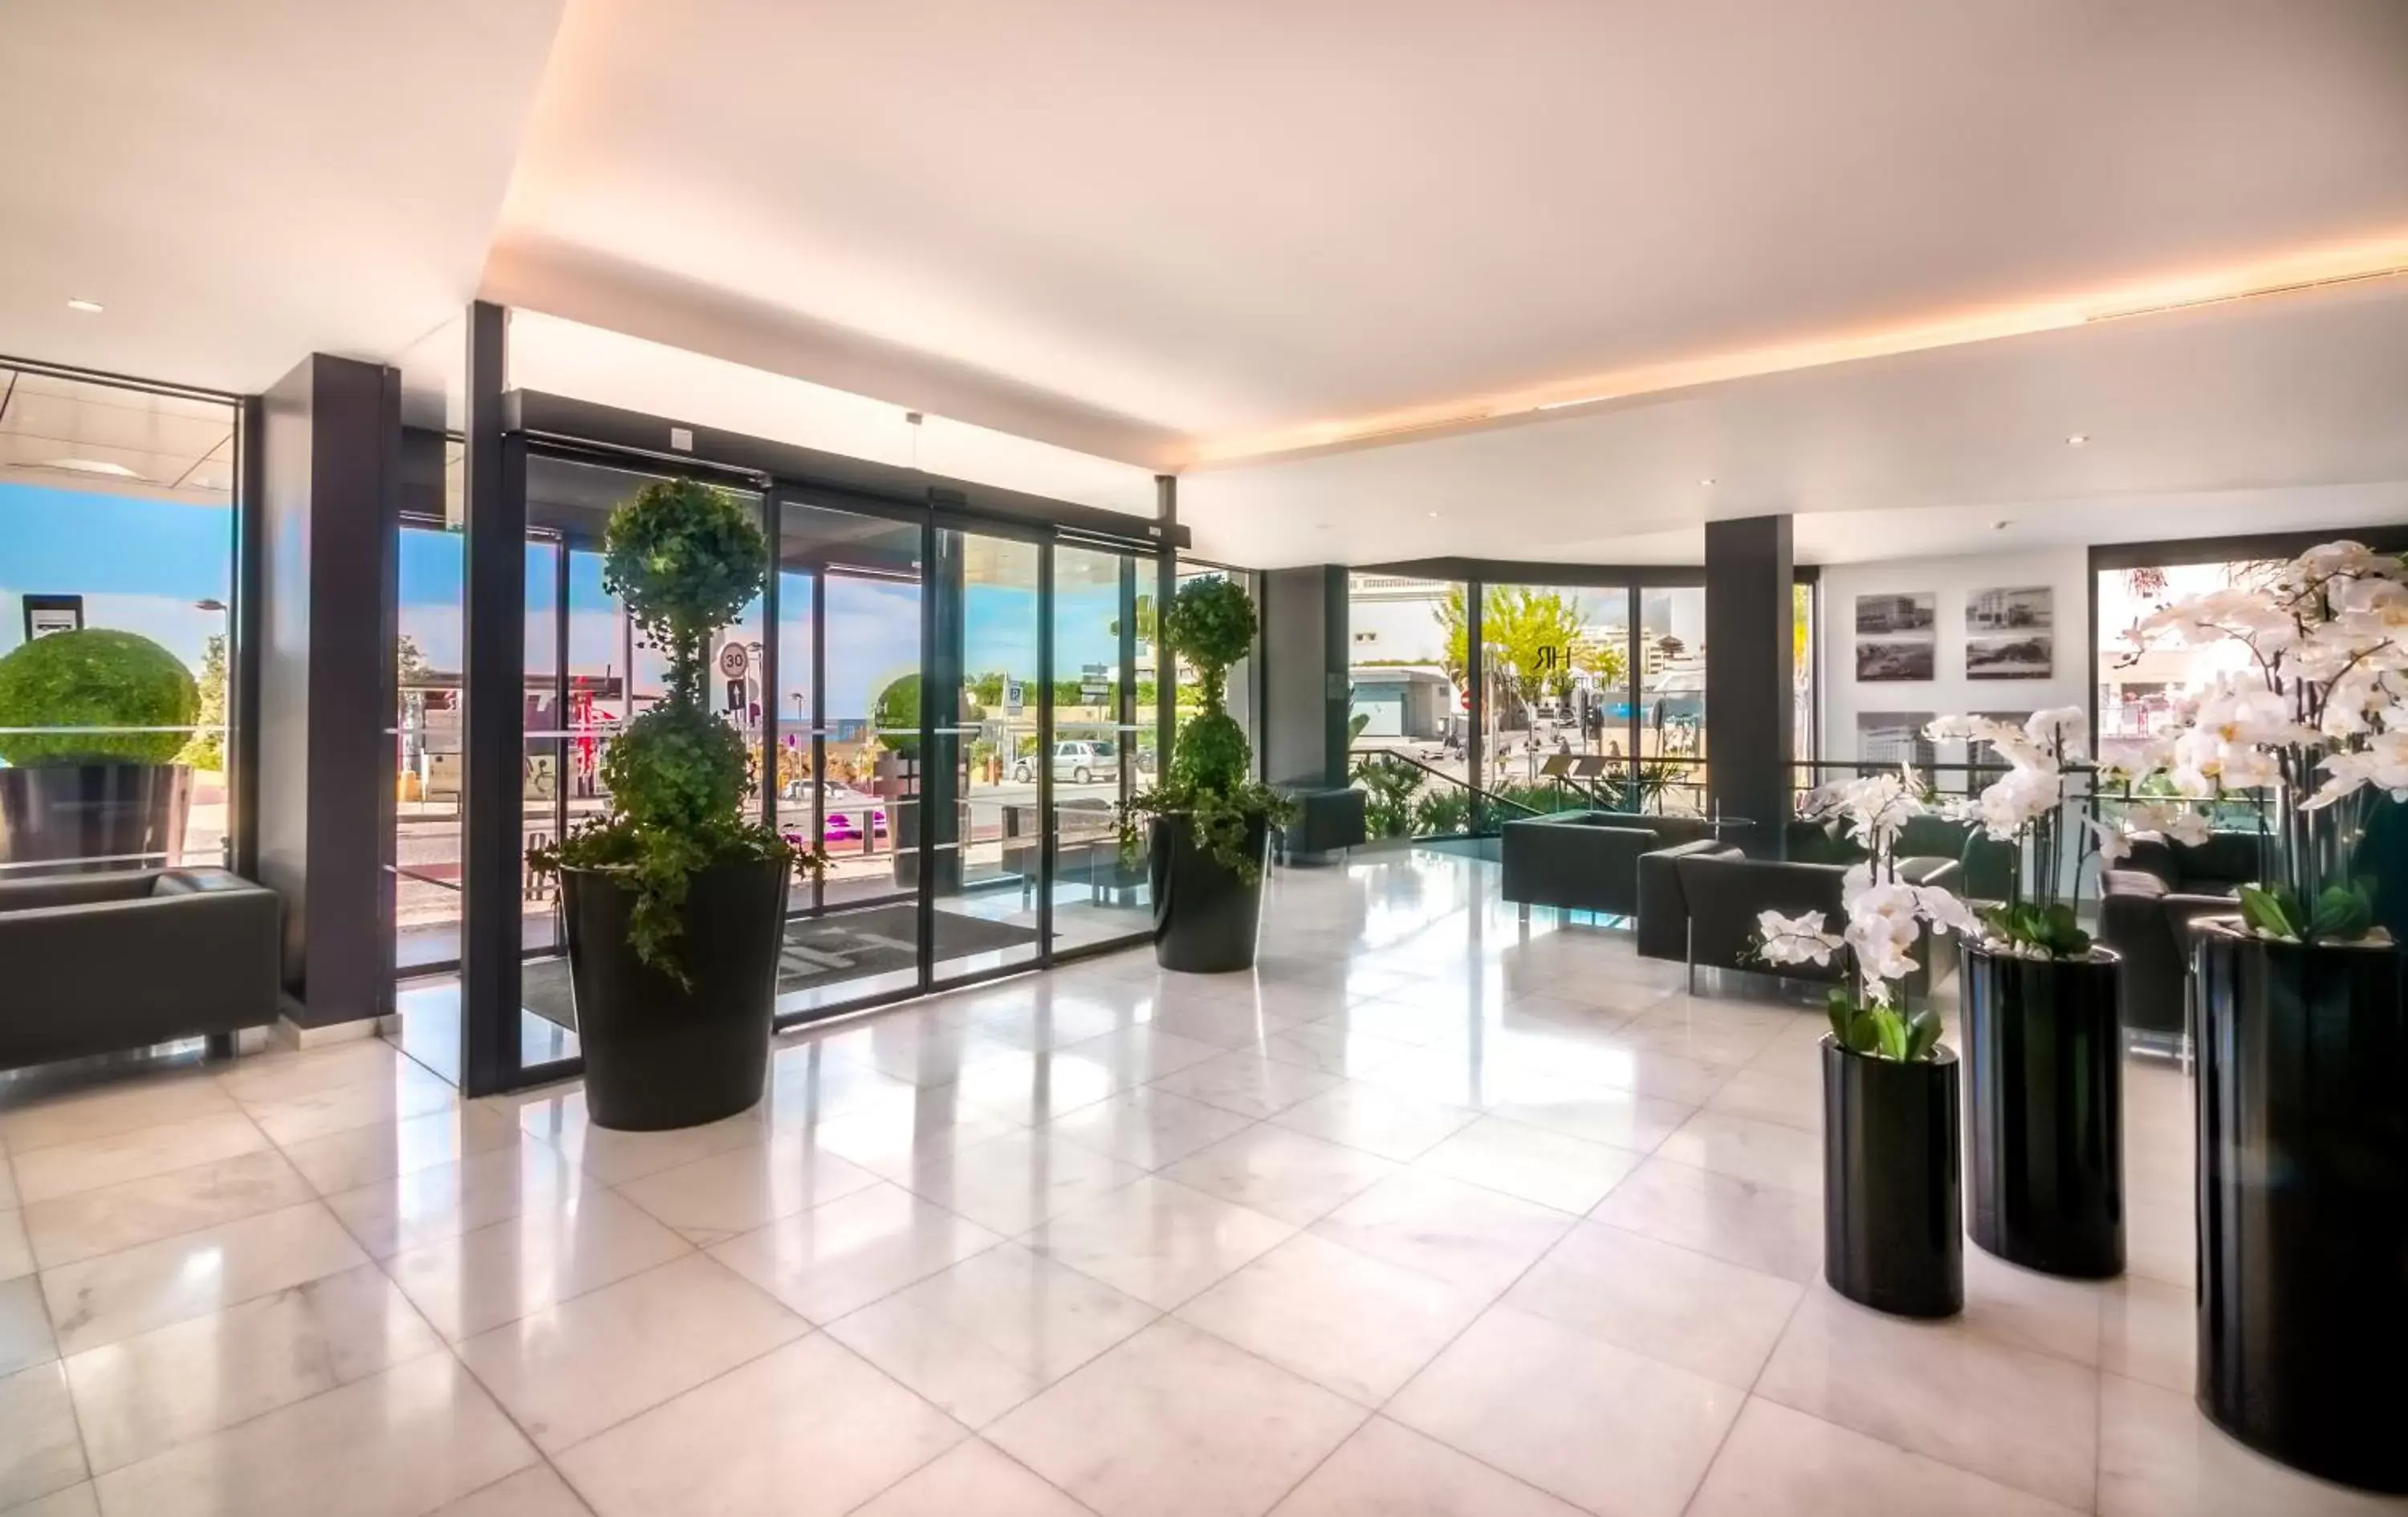 Lobby or reception in RR Hotel da Rocha